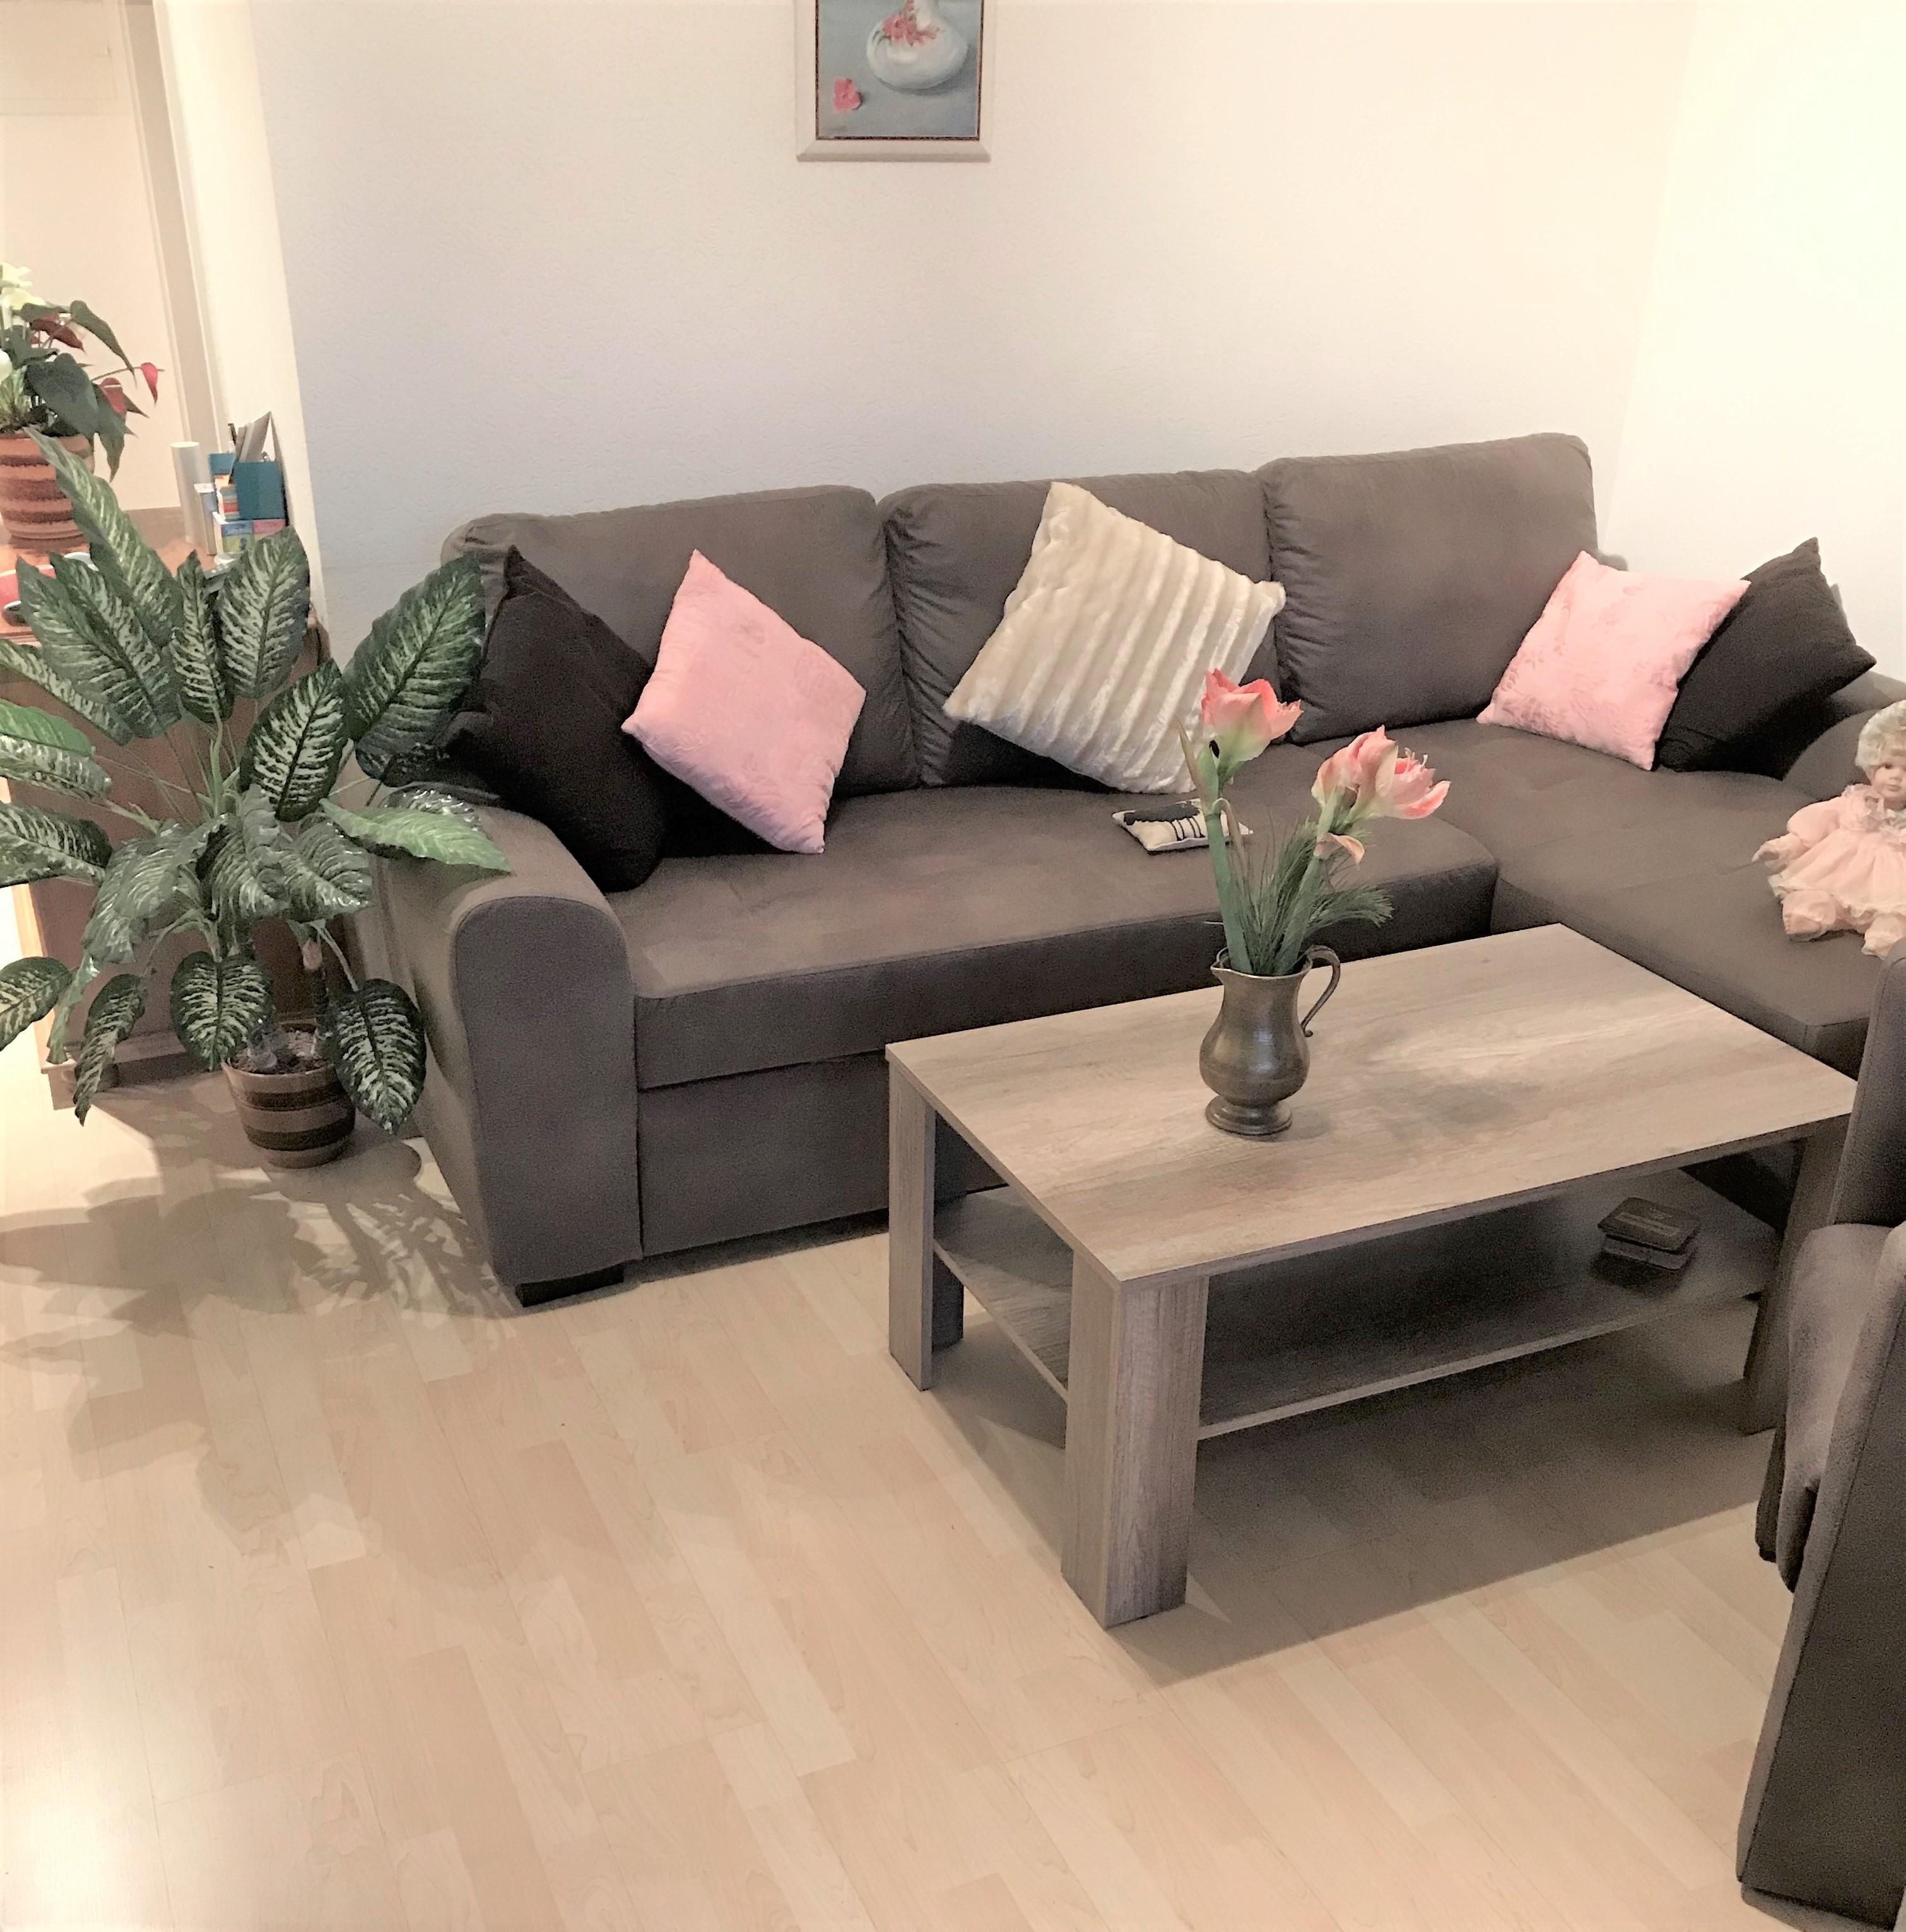 Lümmelcouch mit Sitz-Liege-Lümmel-Kombination.
Und wie lümmelst Du?
#sofa, #wohnzimmer #einrichtung 